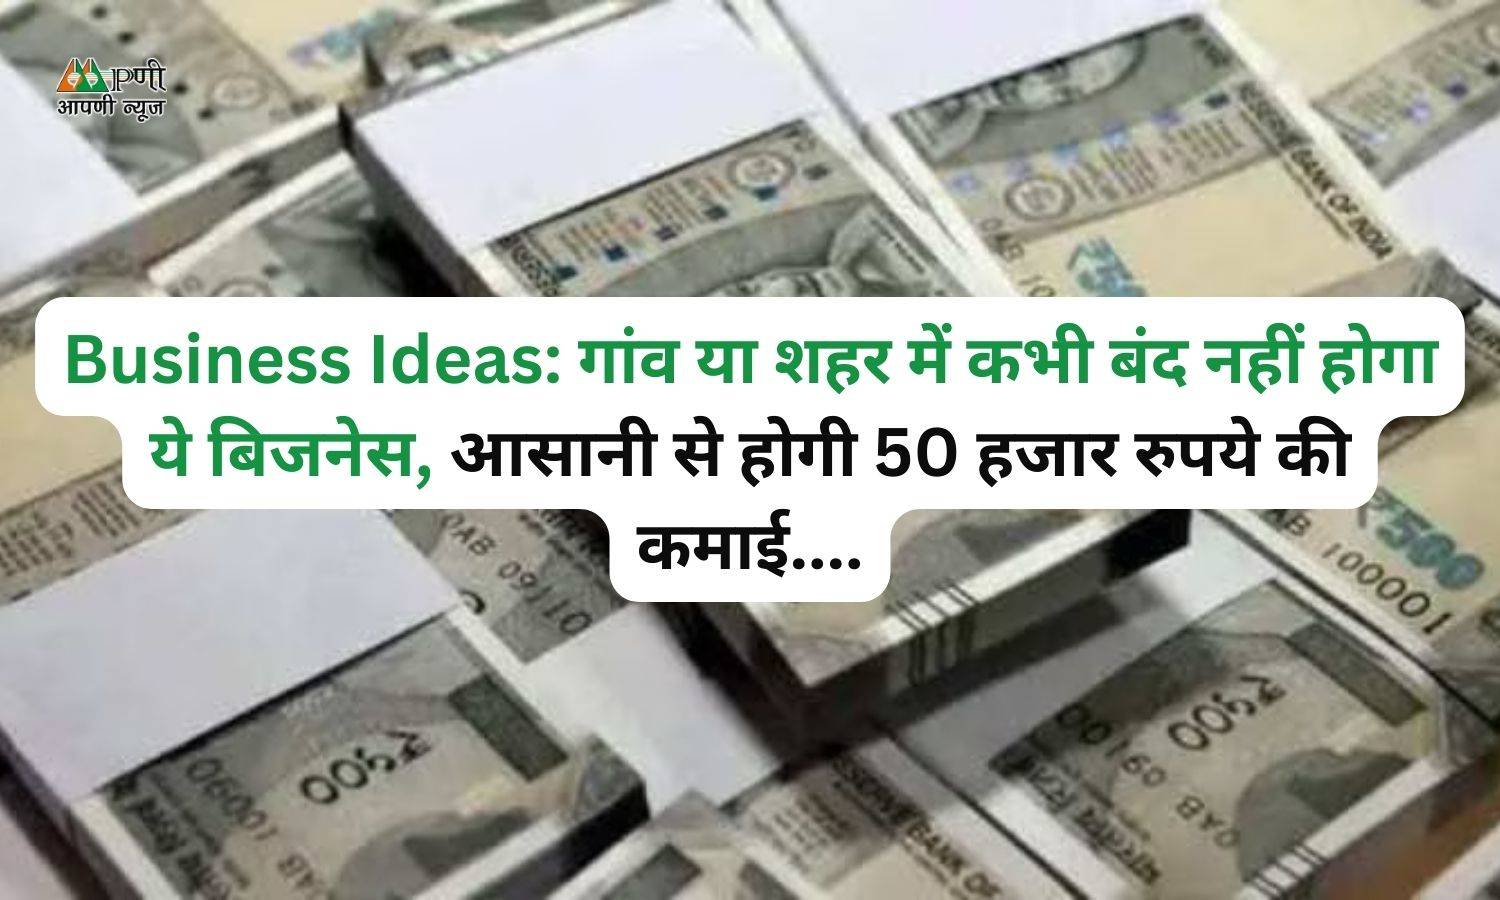 Business Ideas: गांव या शहर में कभी बंद नहीं होगा ये बिजनेस, आसानी से होगी 50 हजार रुपये की कमाई...